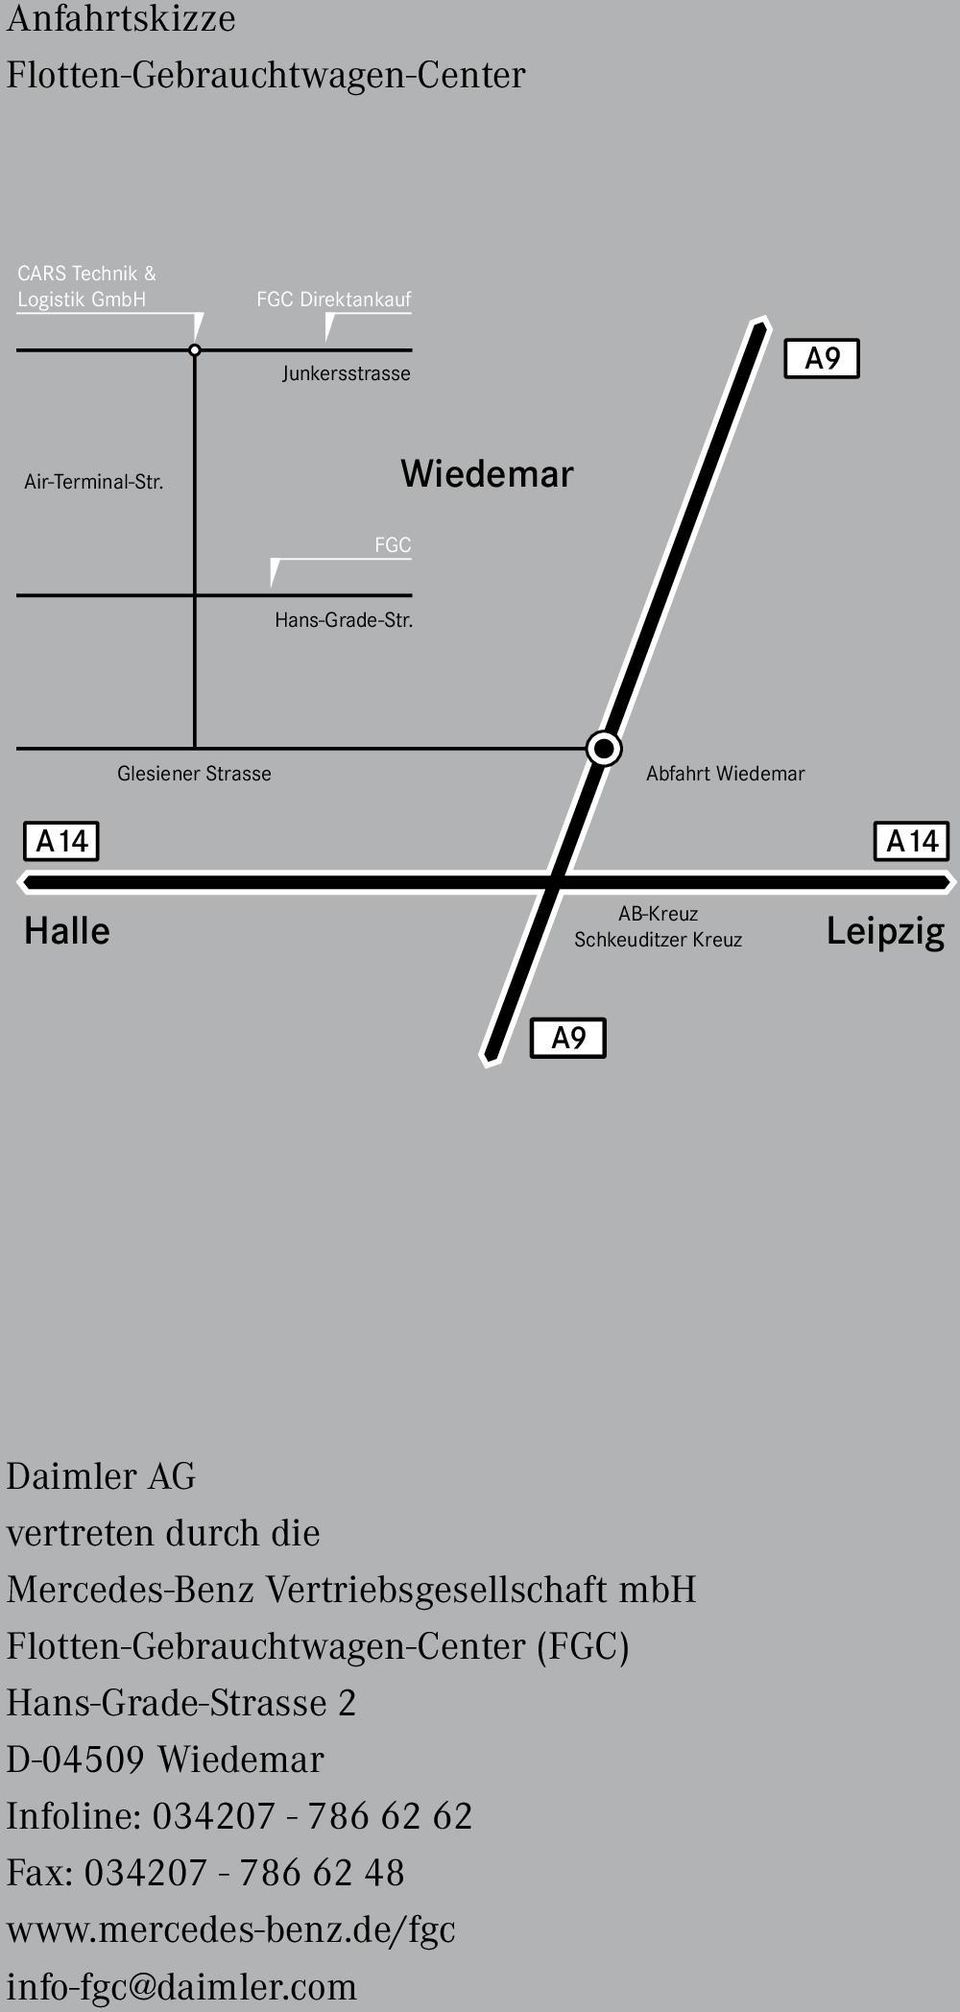 Flotten-Gebrauchtwagen-Center (FGC) Hans-Grade-Strasse 2 D-04509